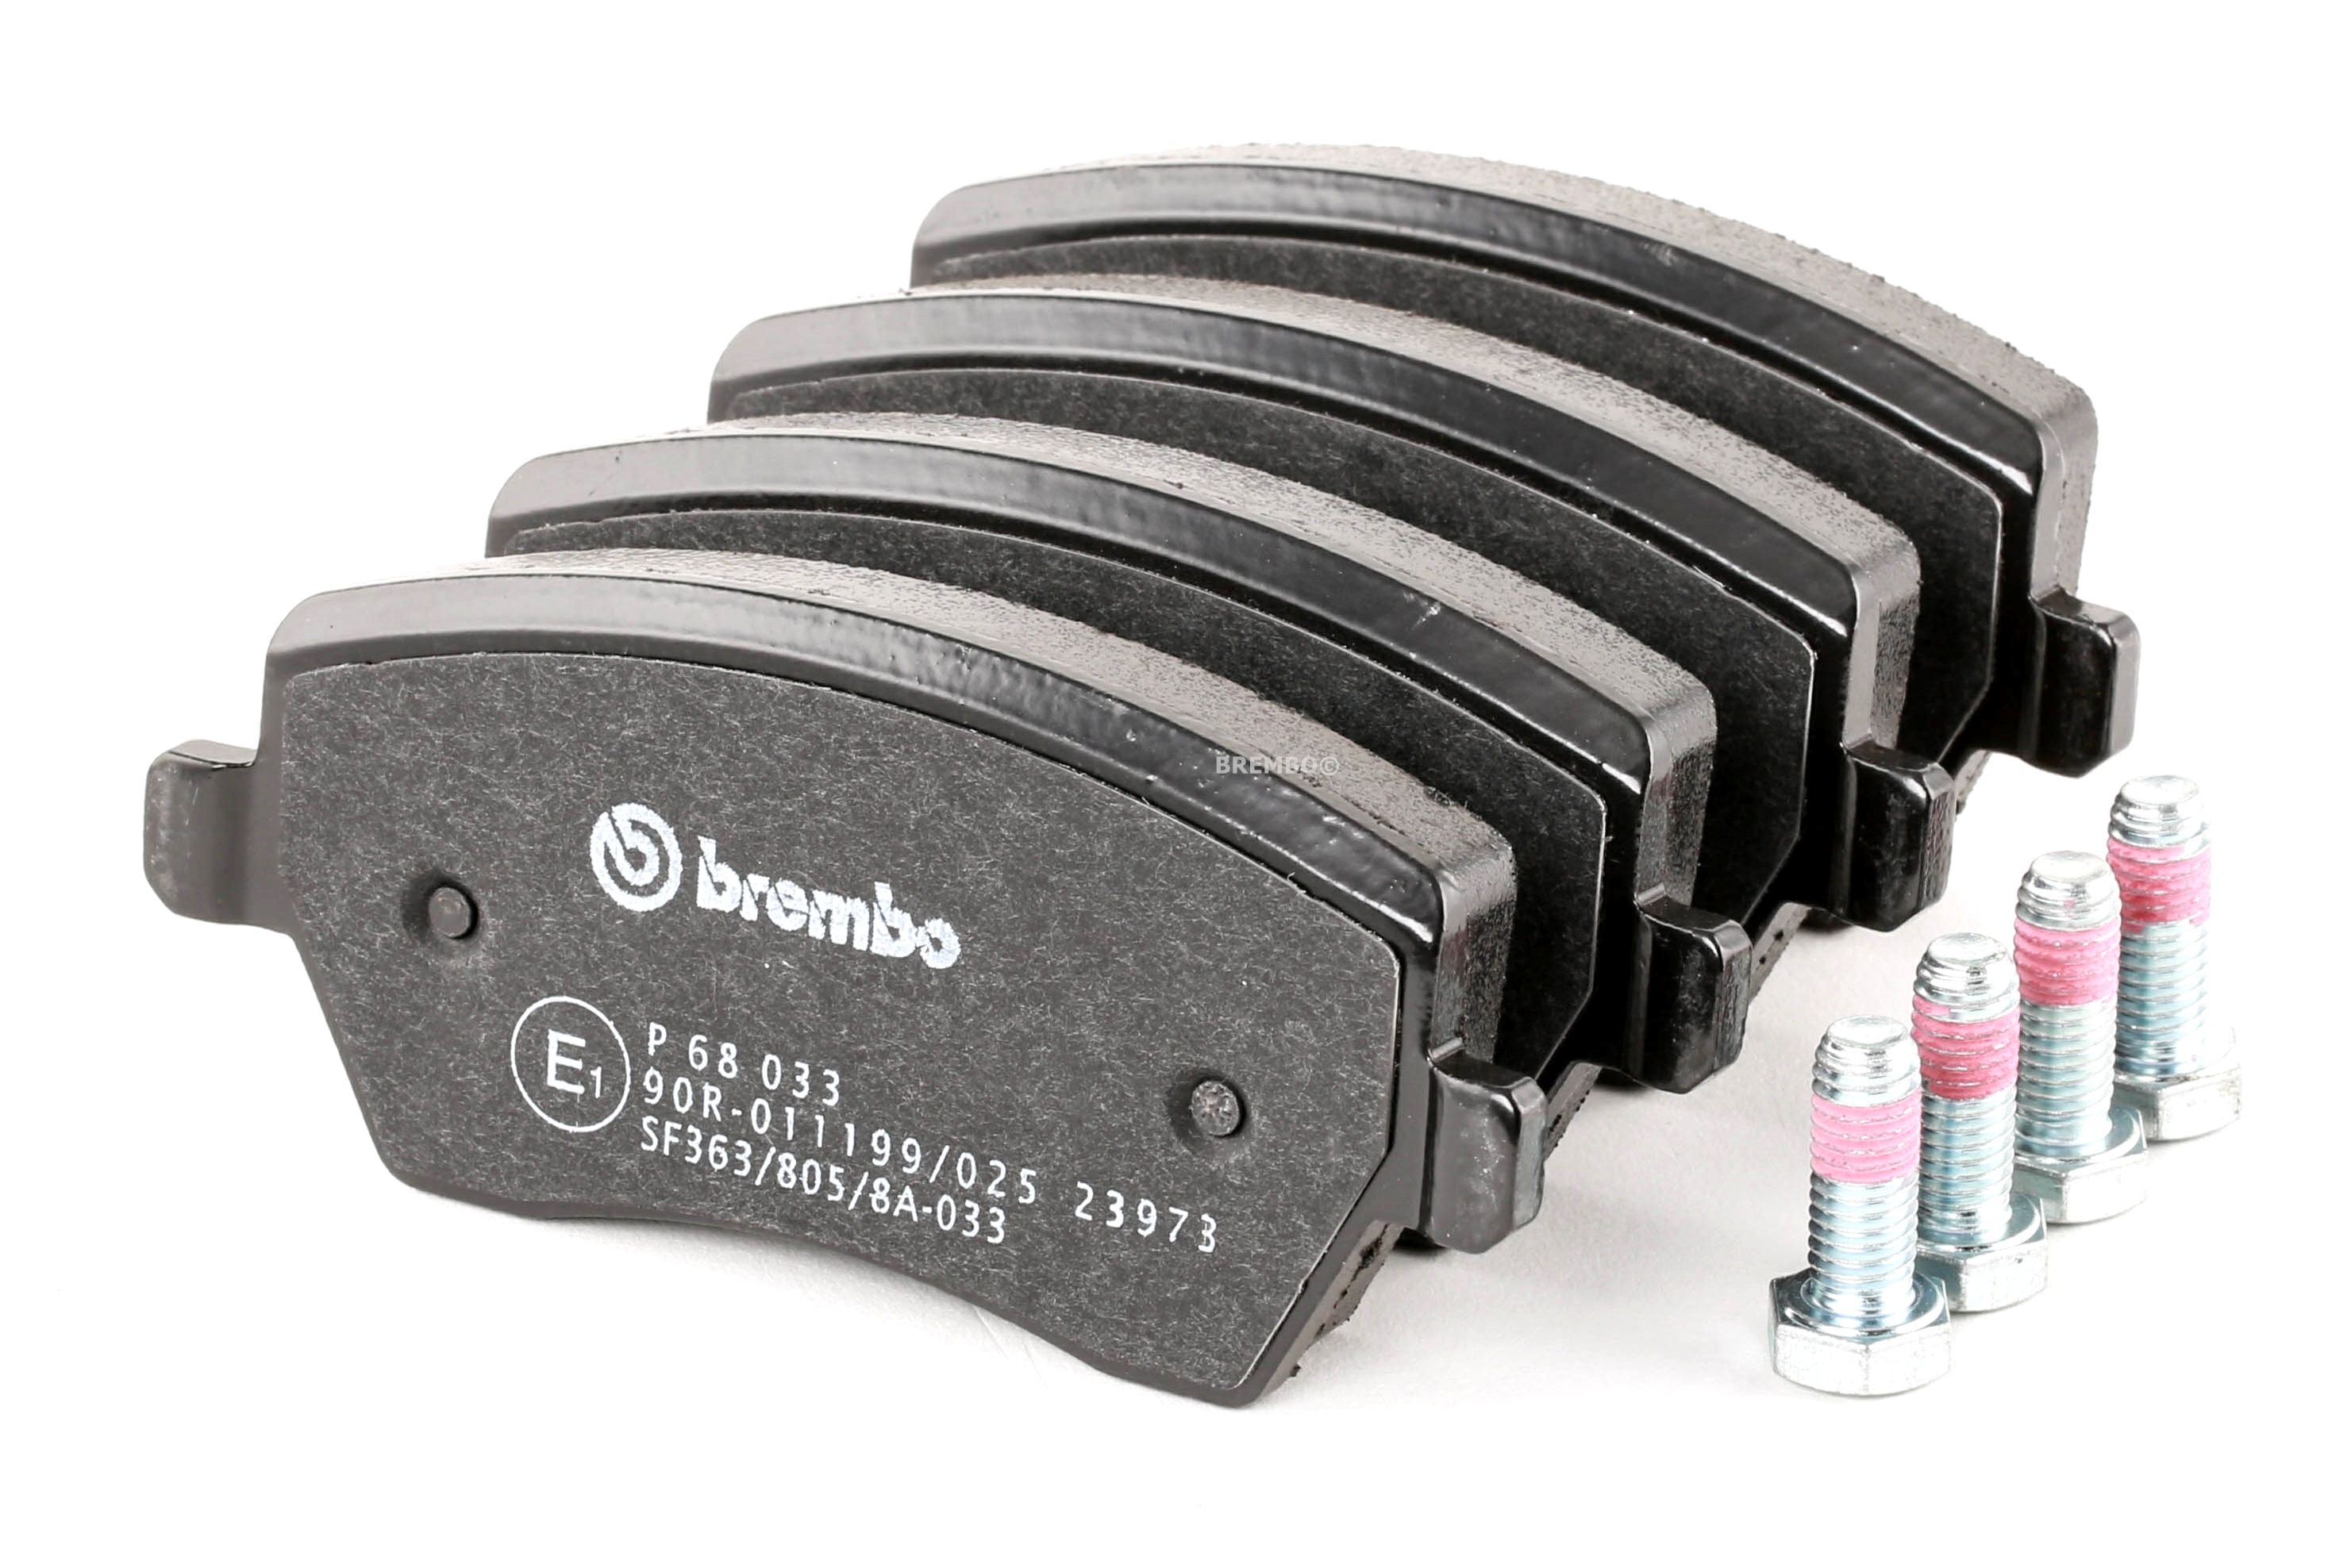 BREMBO P 68 033 Bremsbelagsatz mit akustischer Verschleißwarnung, mit Anti-Quietsch-Blech, mit Zubehör